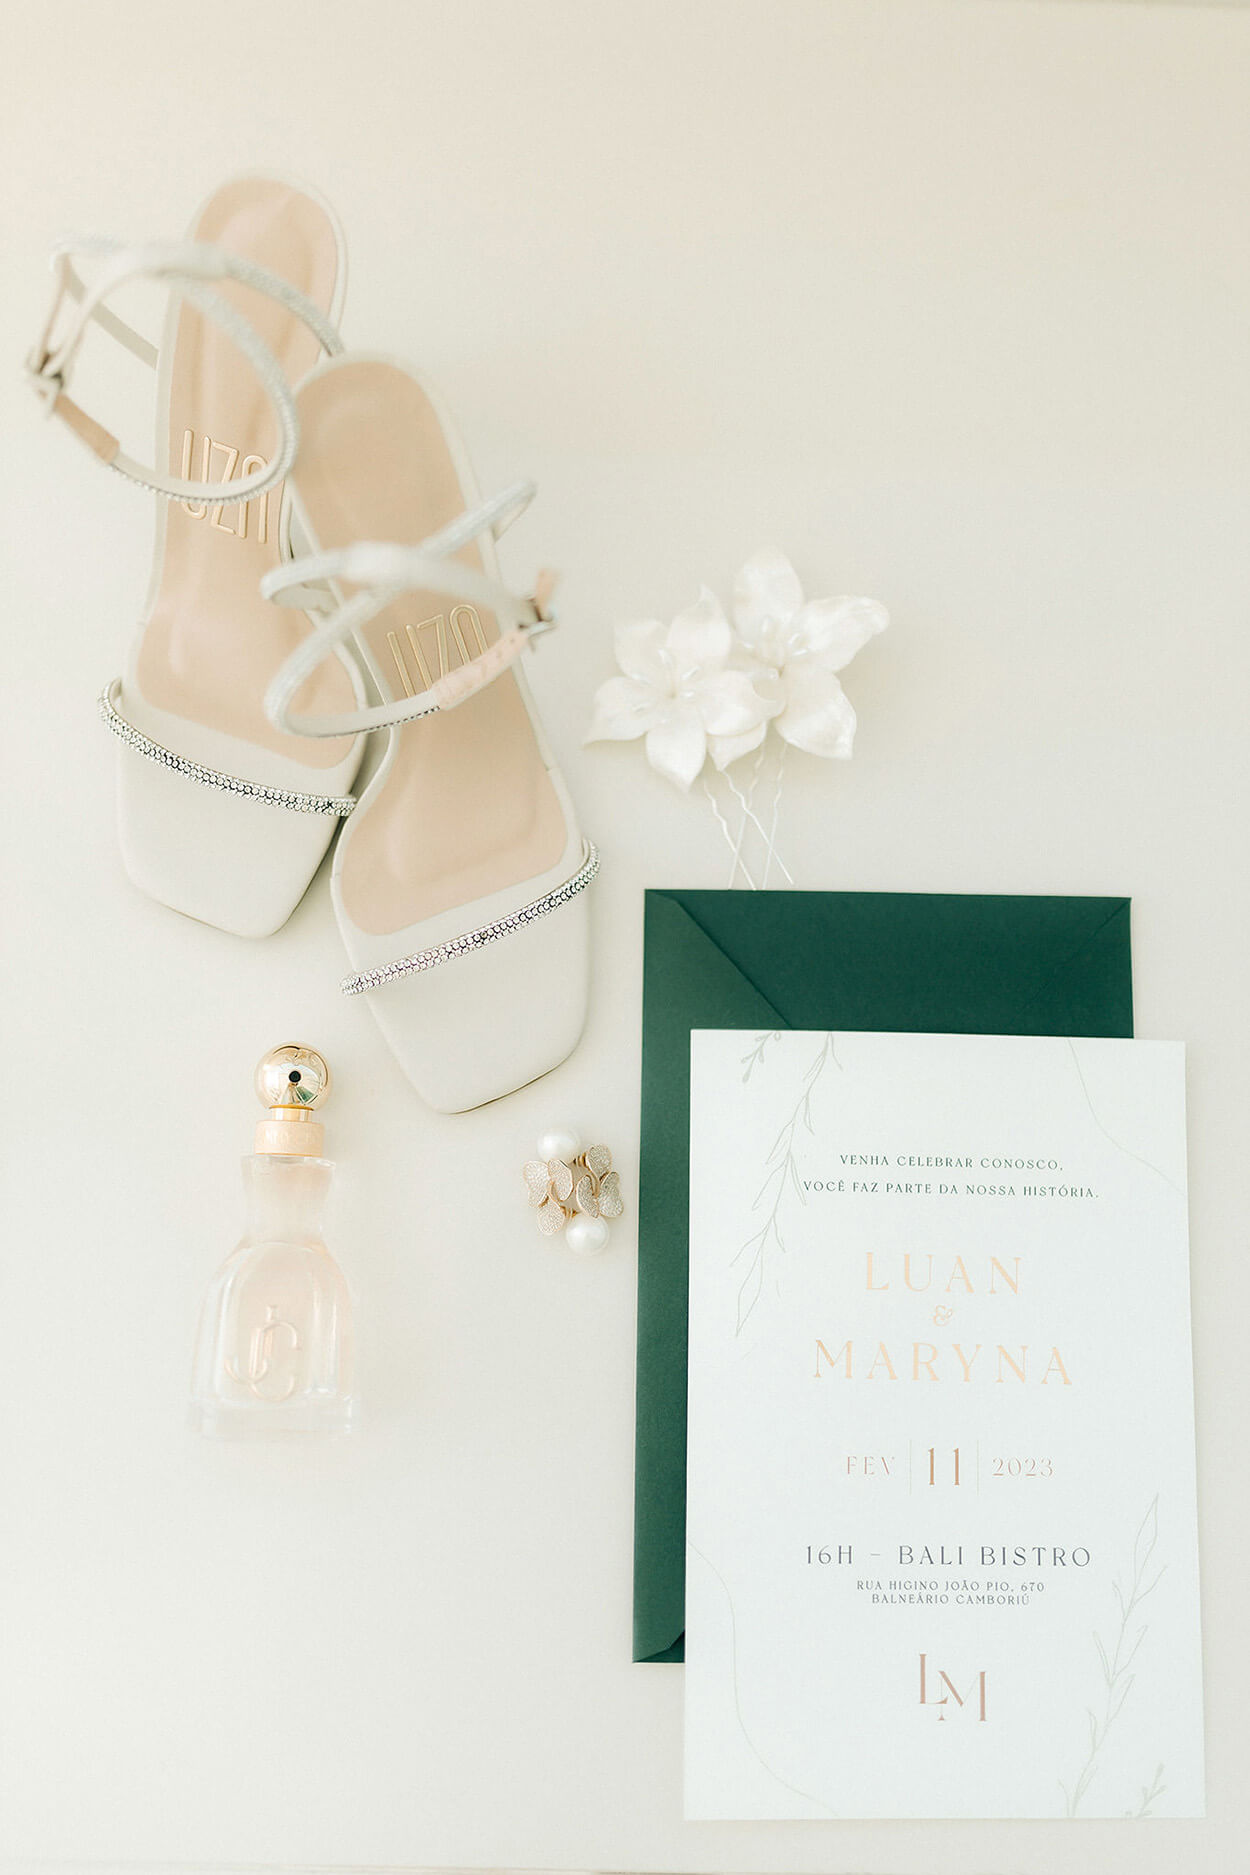 Convite de casamento branco com envelope verde sandalia branca com strass e grinalda de flores branca